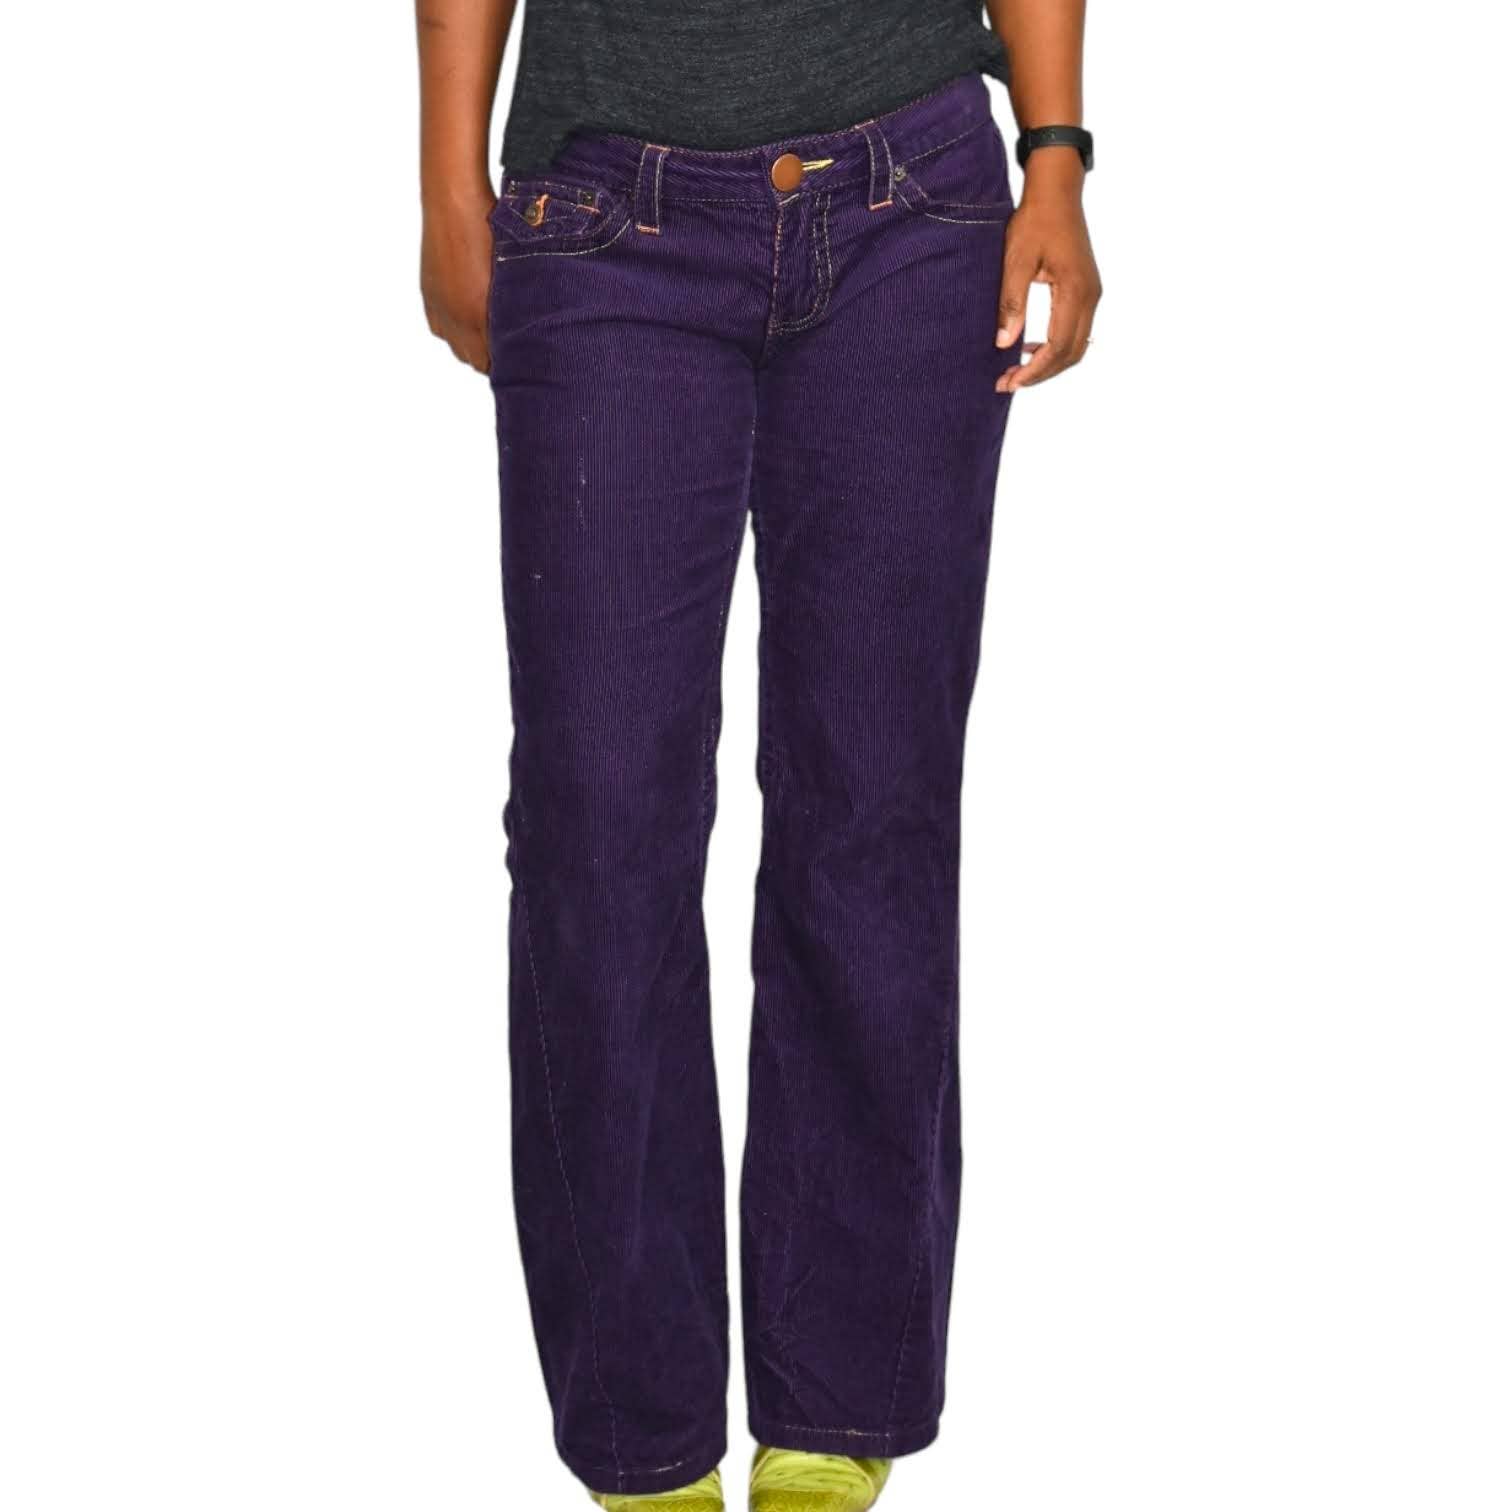 Gadzooks Corduroy Pants Purple Low Rise Flare 90s Y2K Vintage Cords Cotton Retro Size 6